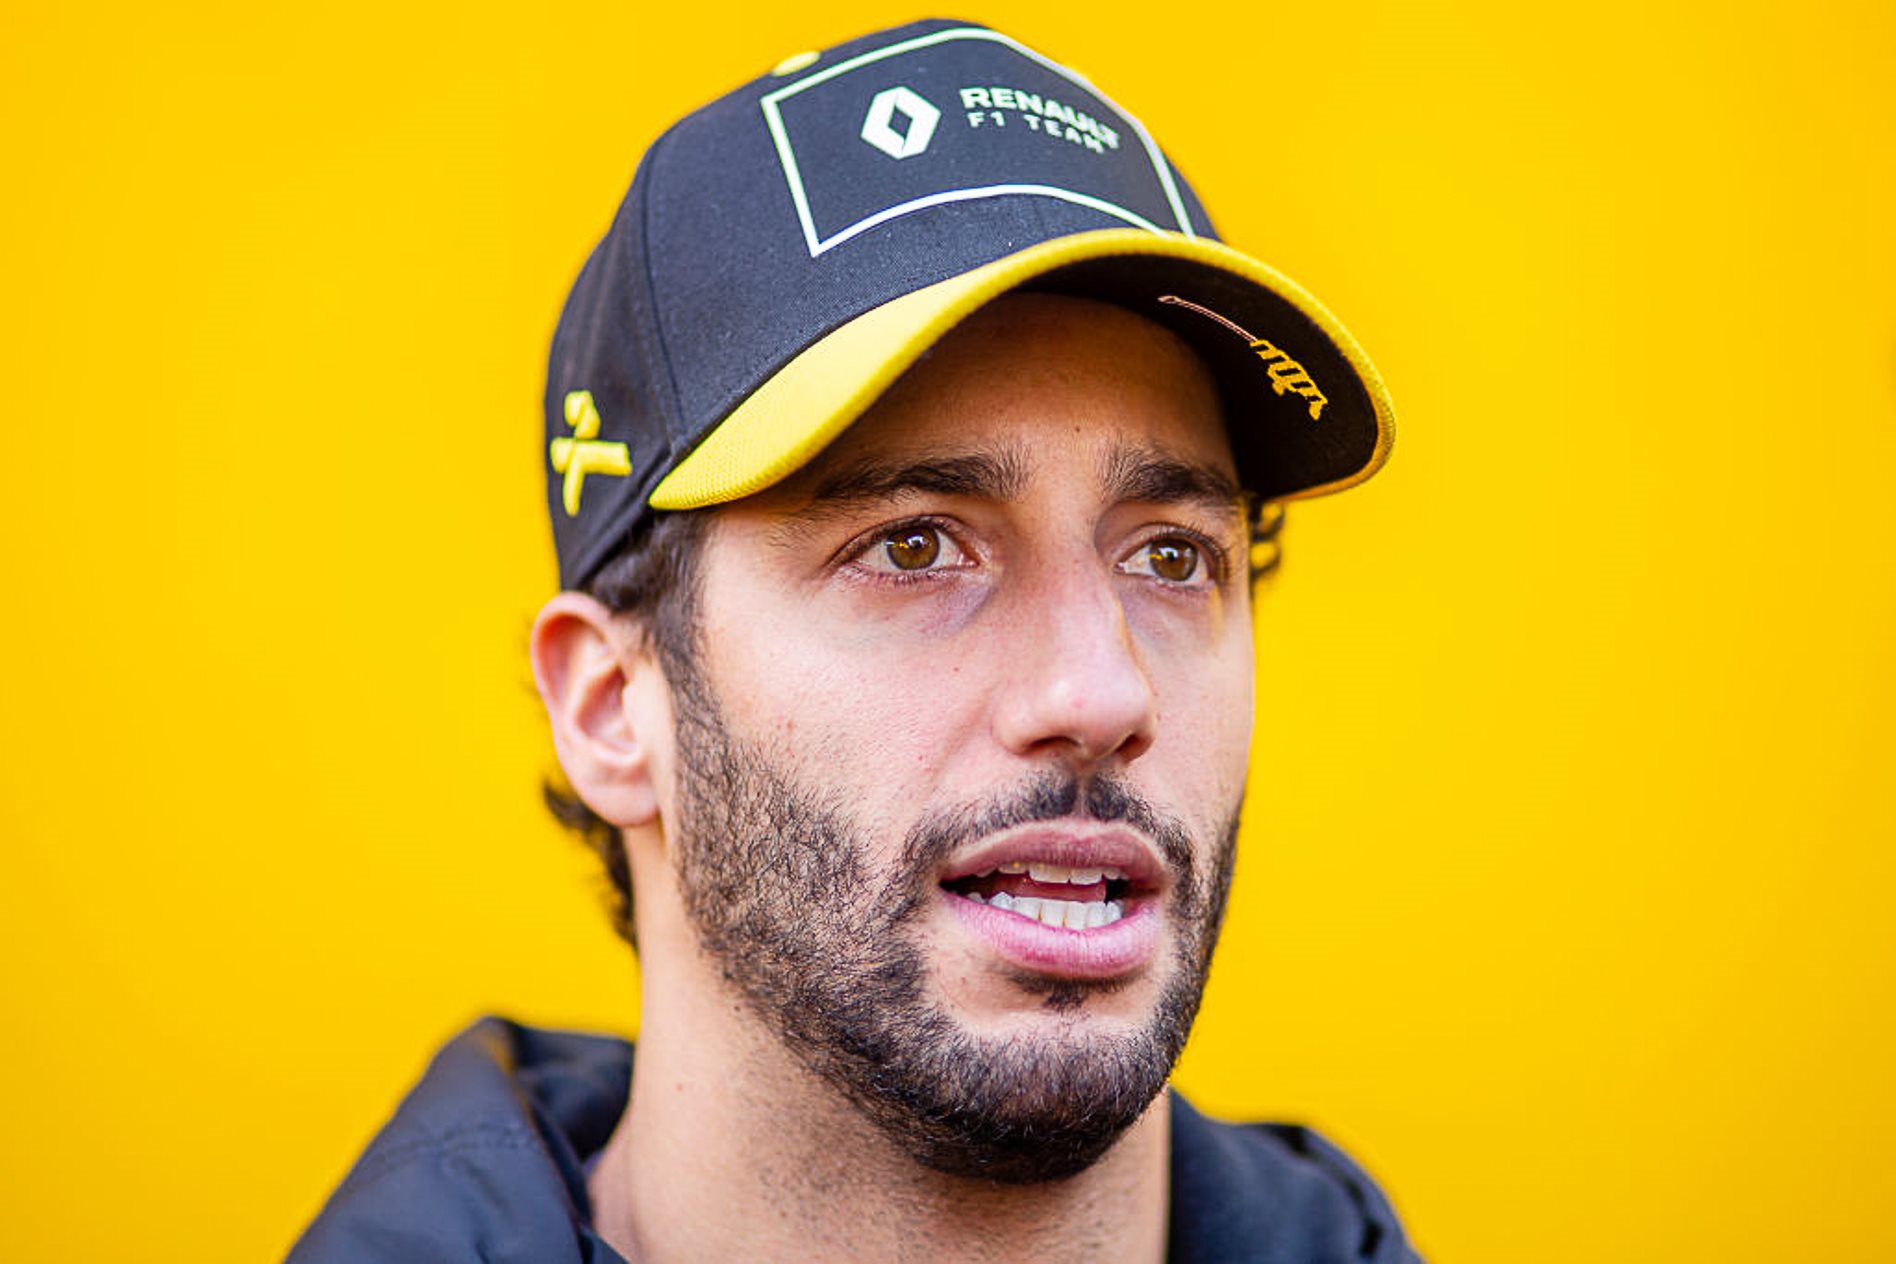 McLaren F1 welcomes Aussie ace Daniel Ricciardo